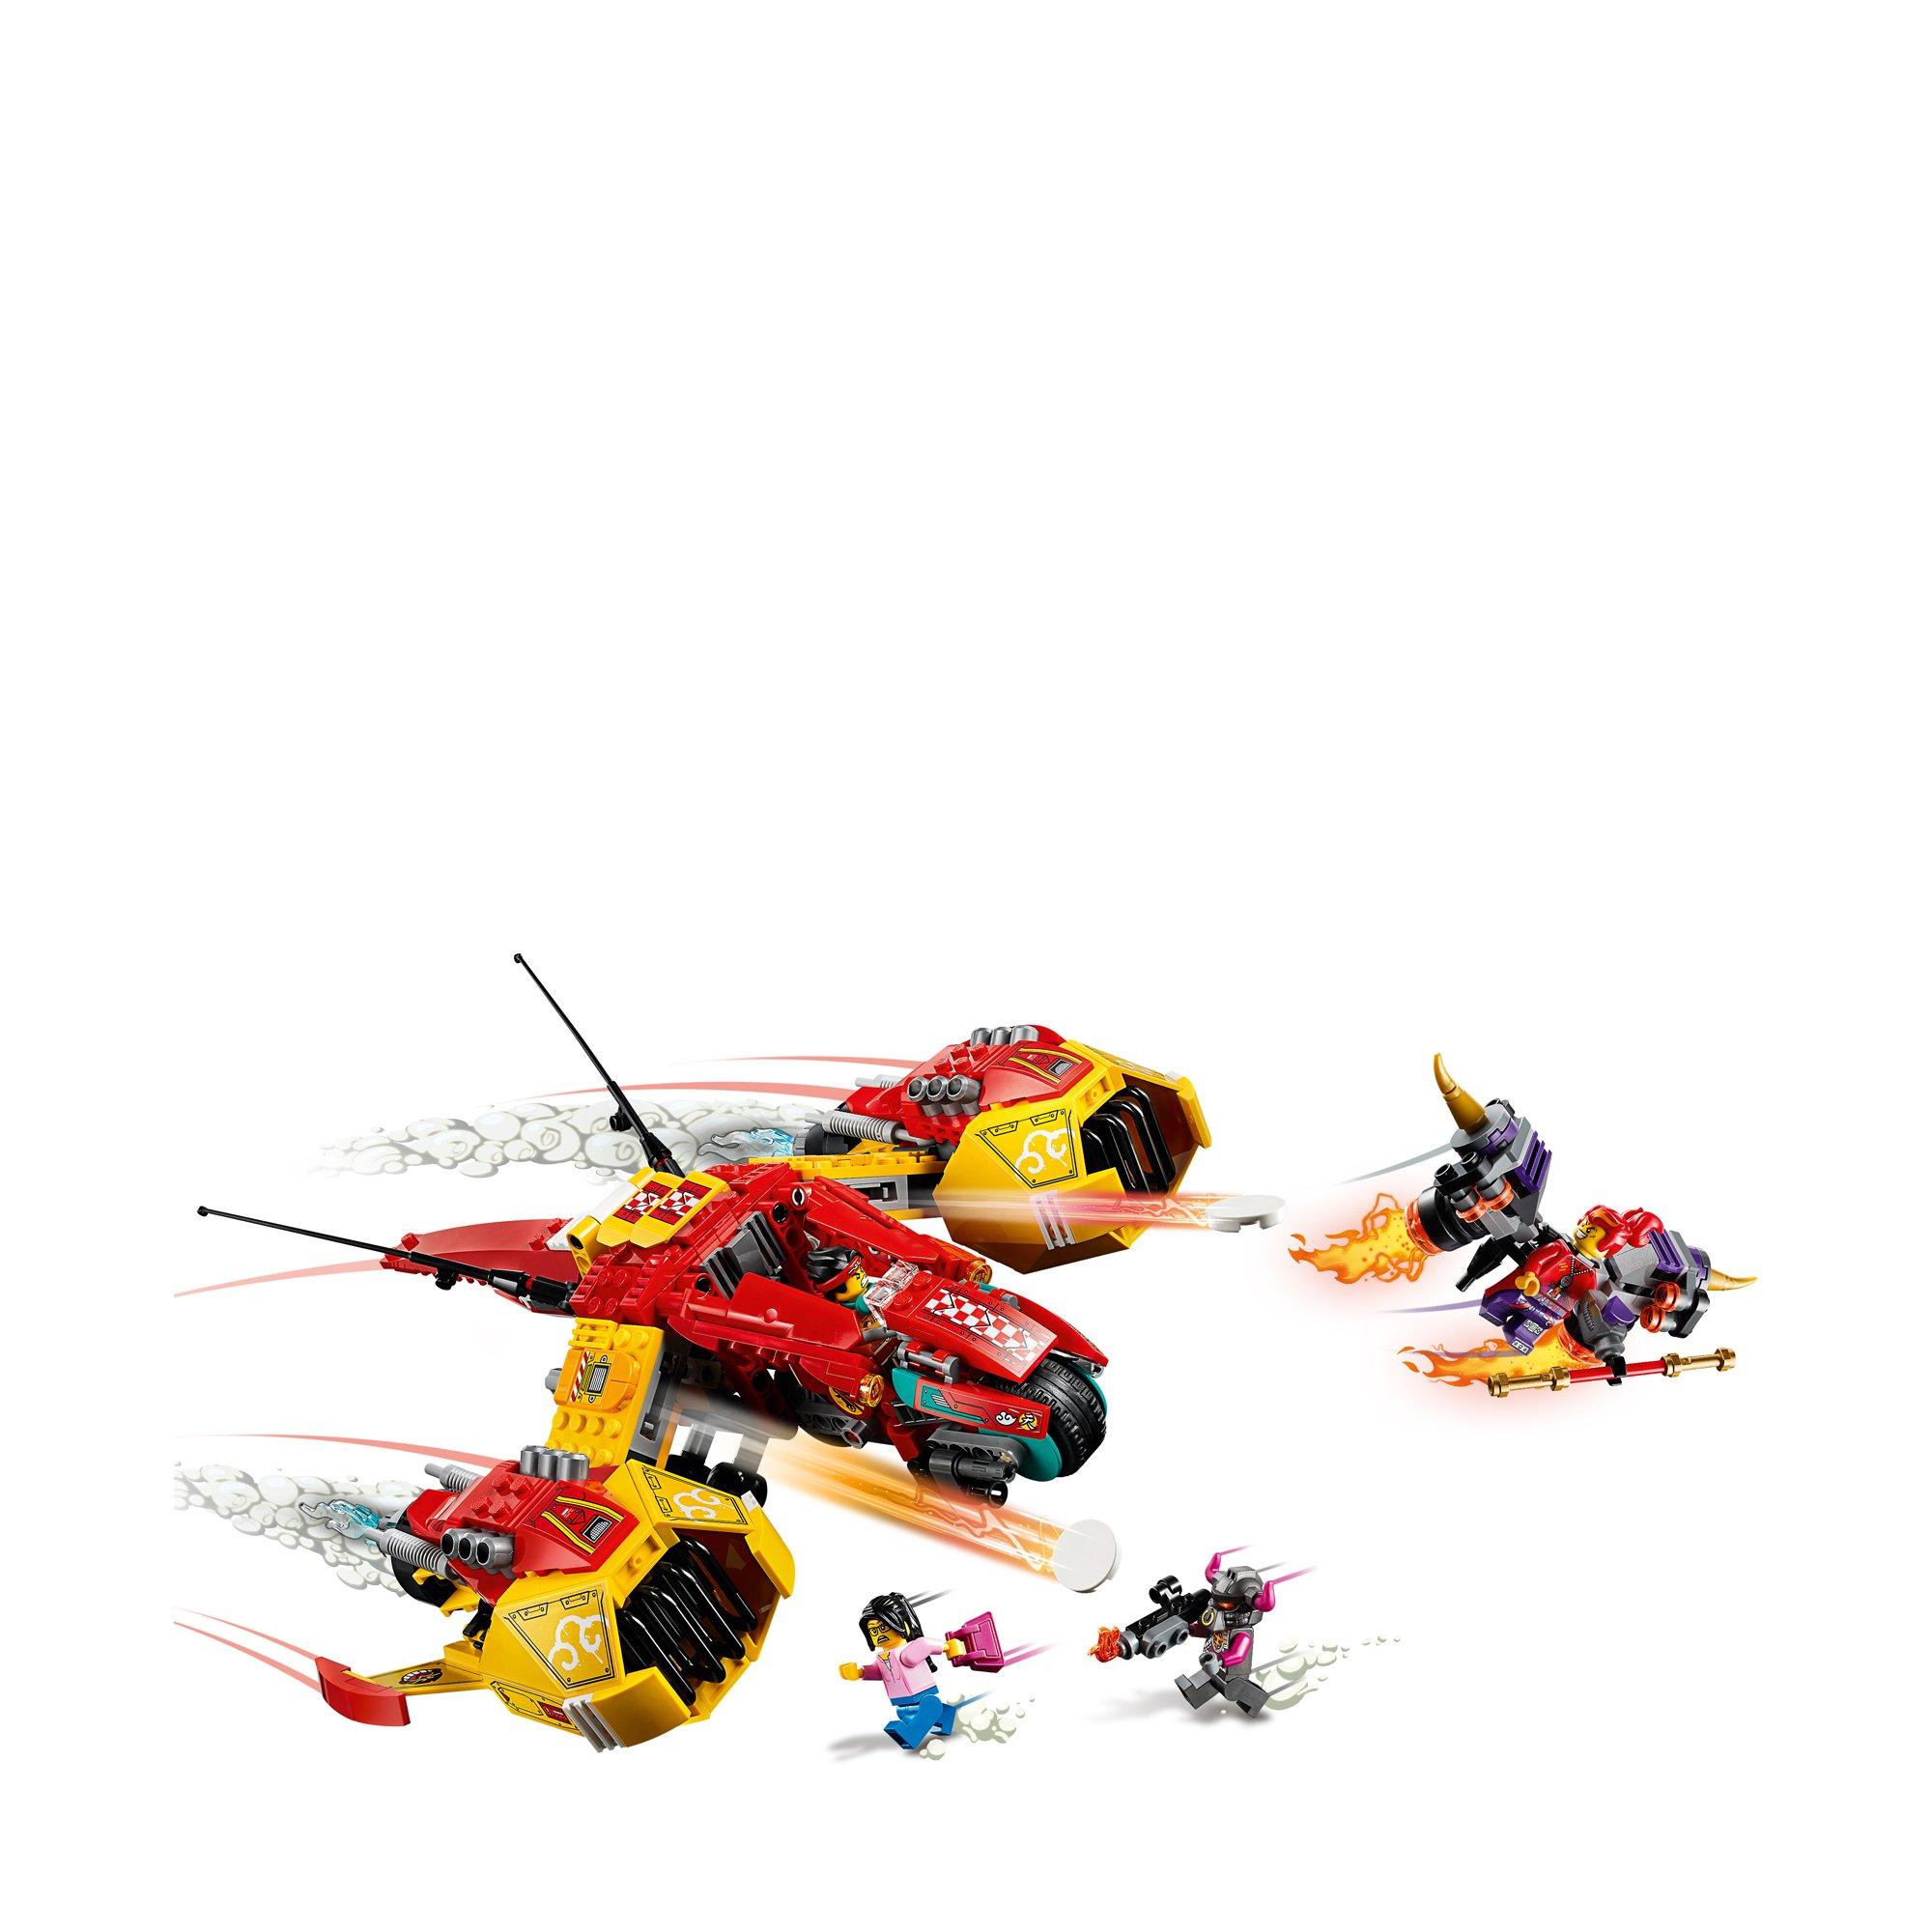 LEGO®  80008 Monkie Kids Nuvola jet 